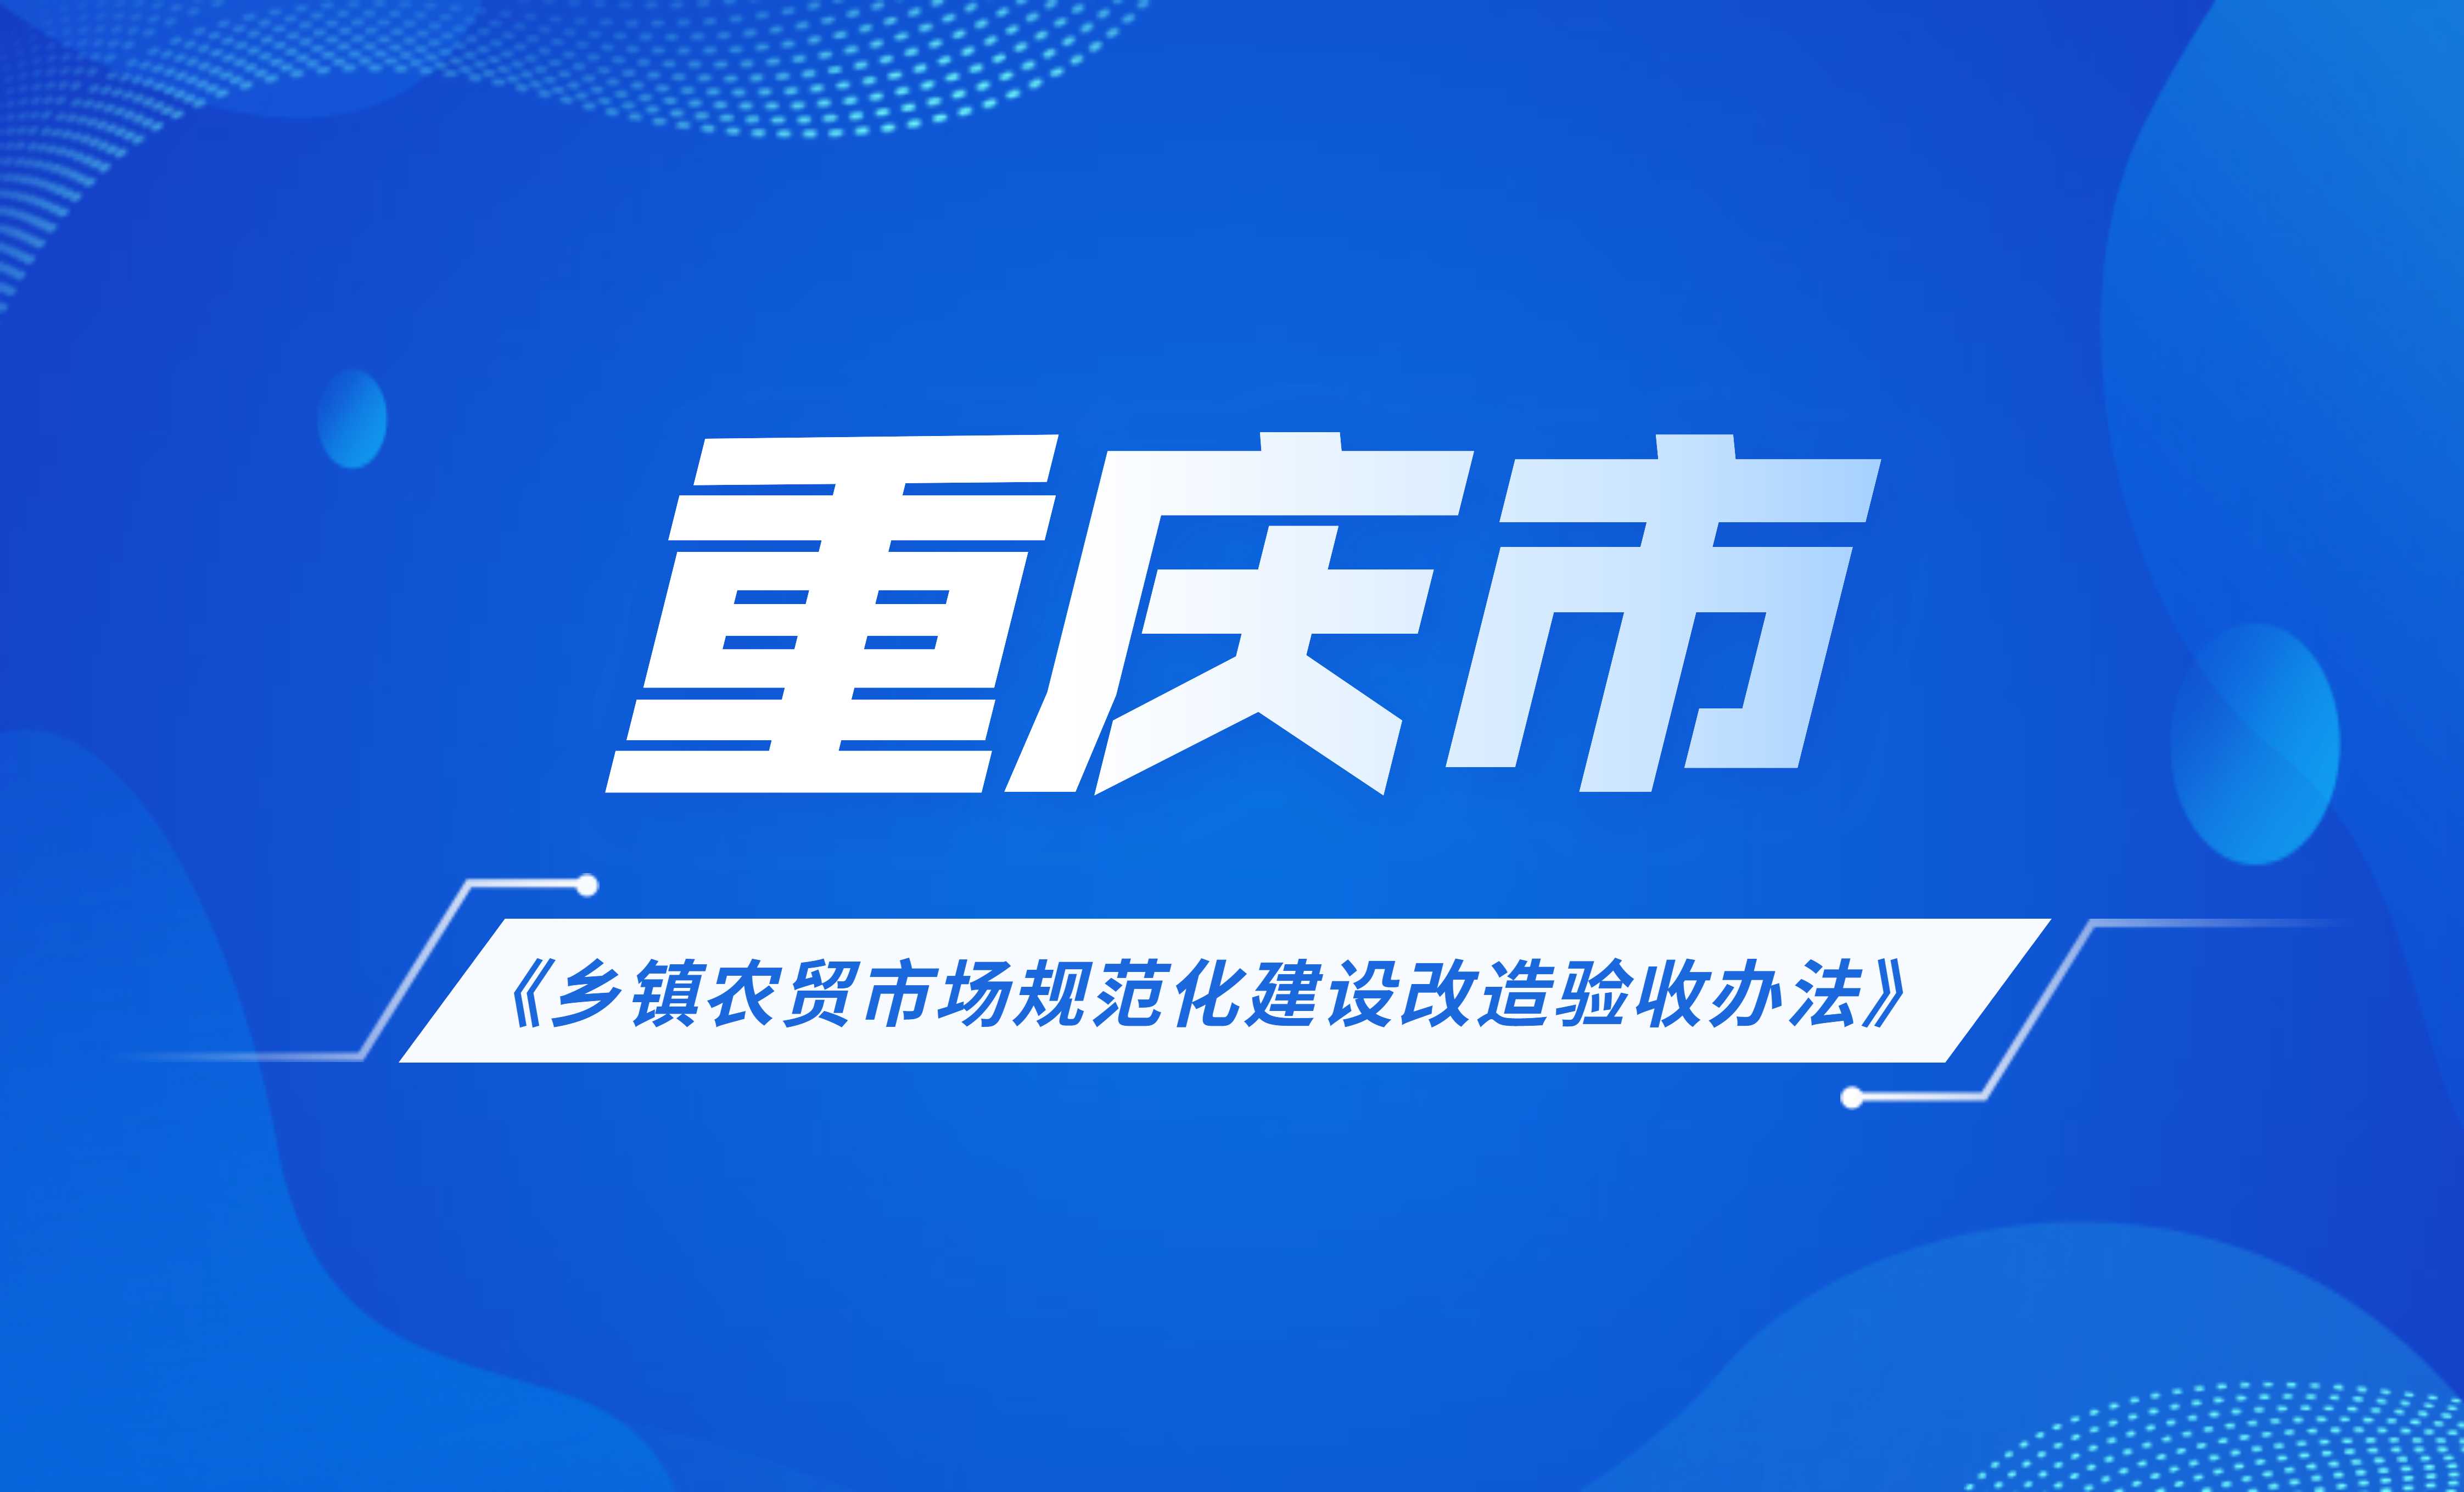 重庆市乡镇农贸市场规范化建设改造验收办法